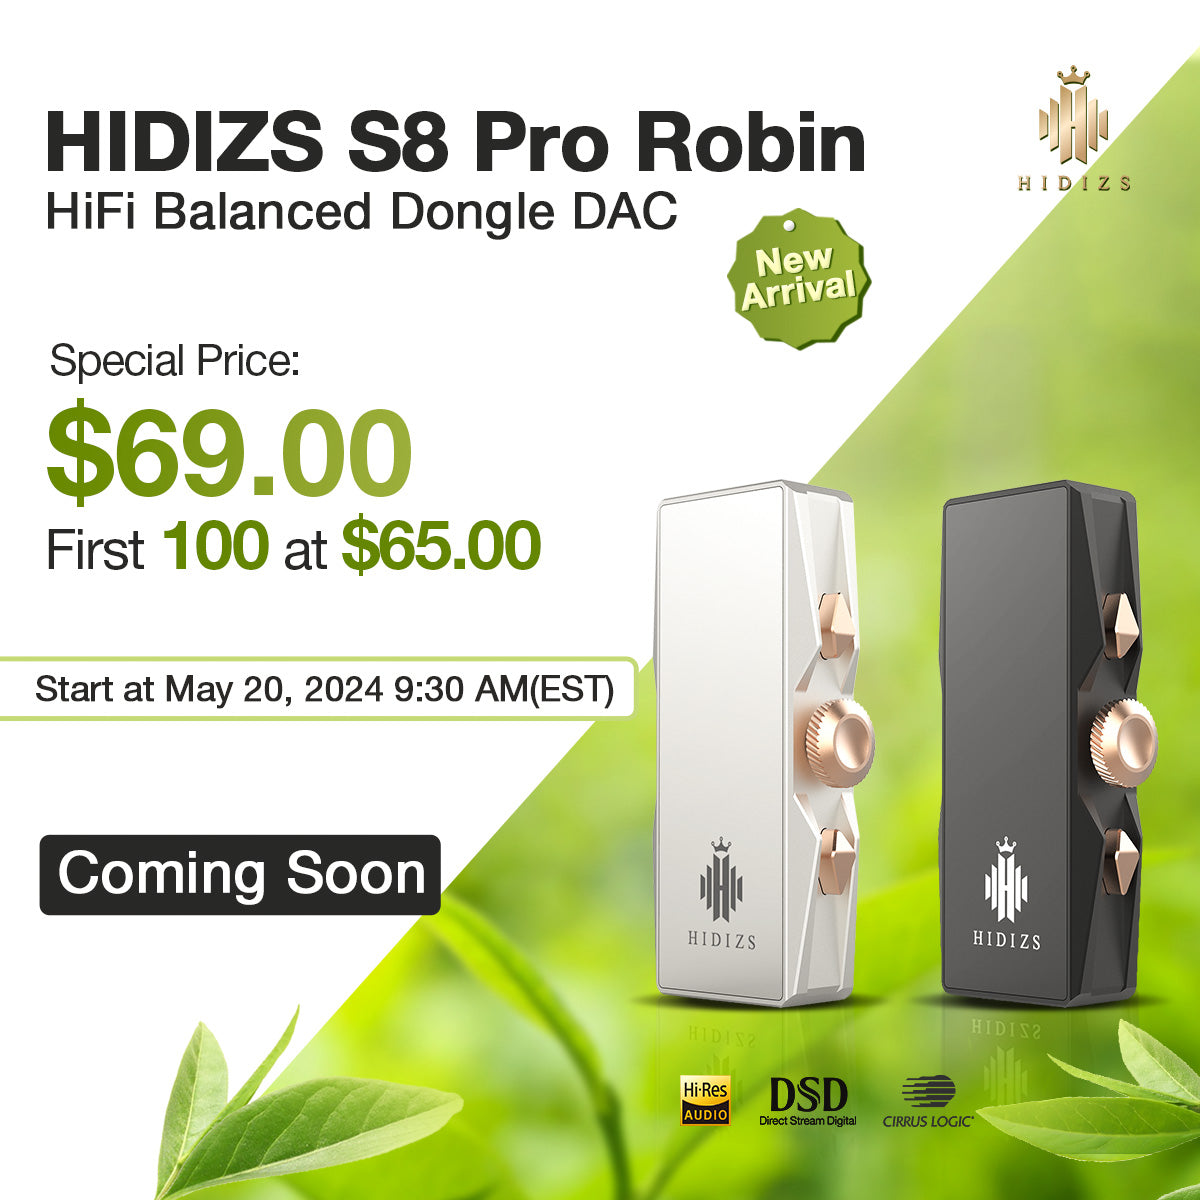 HIDIZS S8 Pro Robin HiFi Balanced Dongle DAC